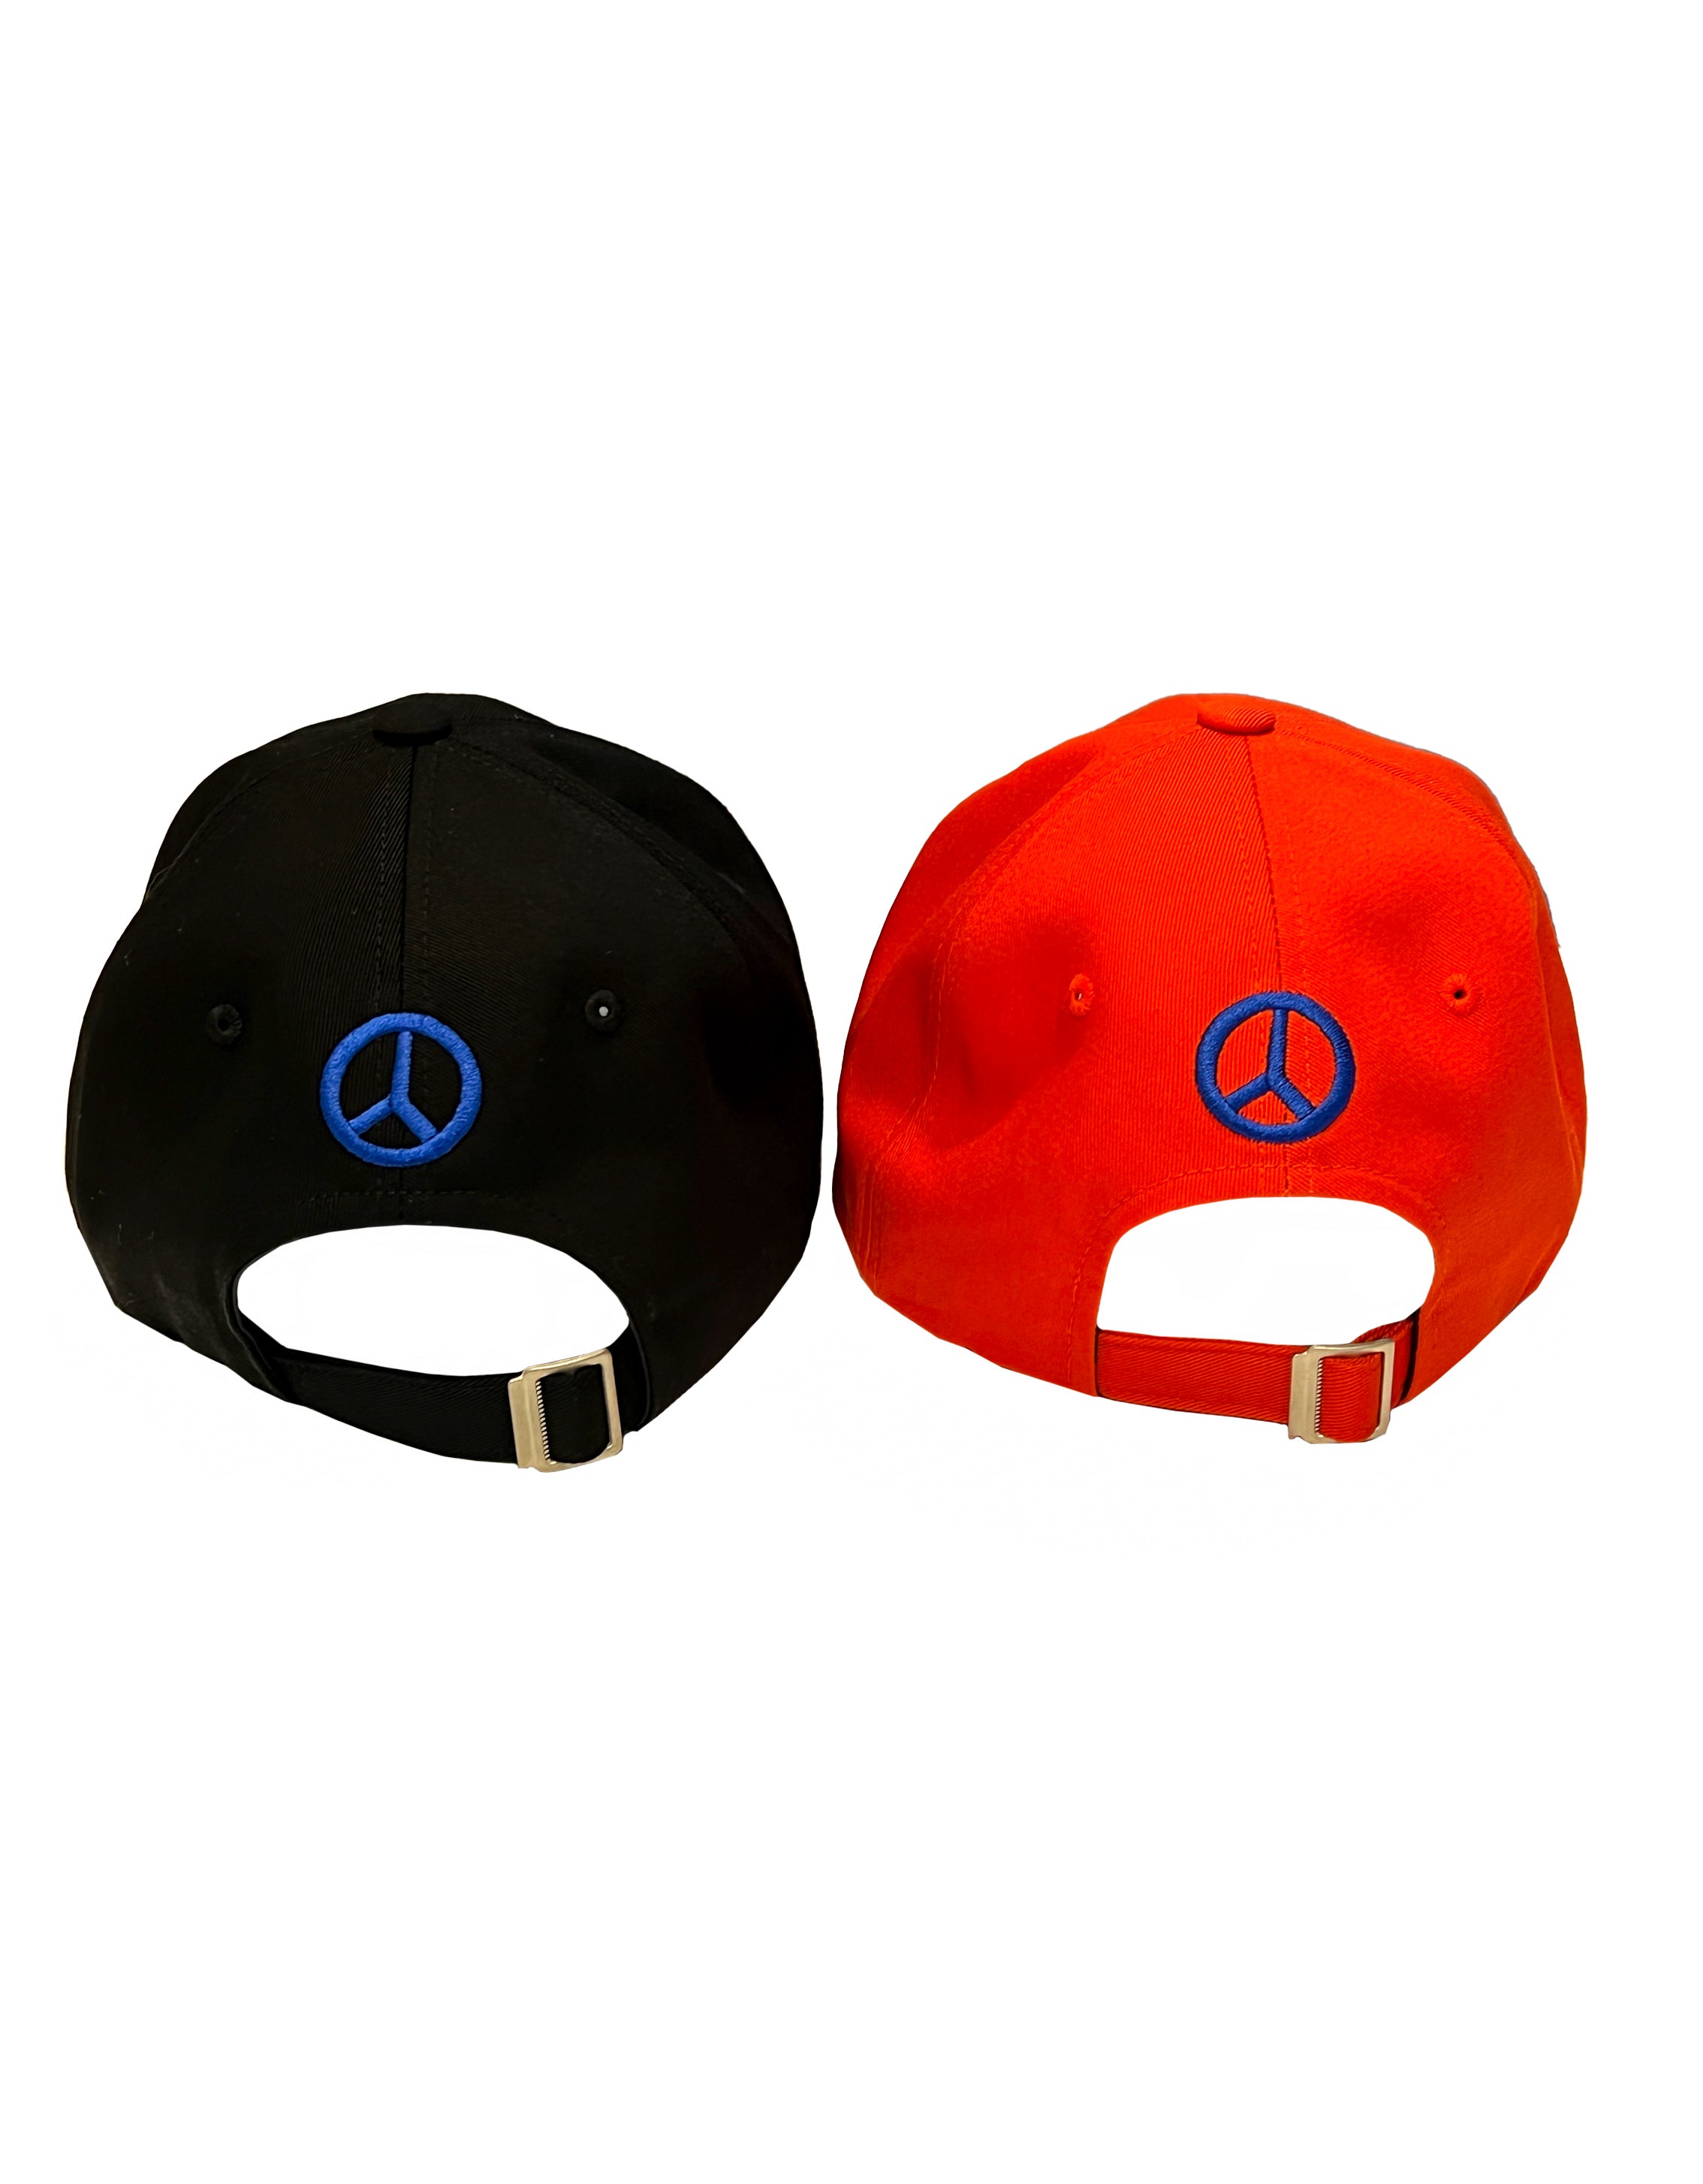 Peace cap